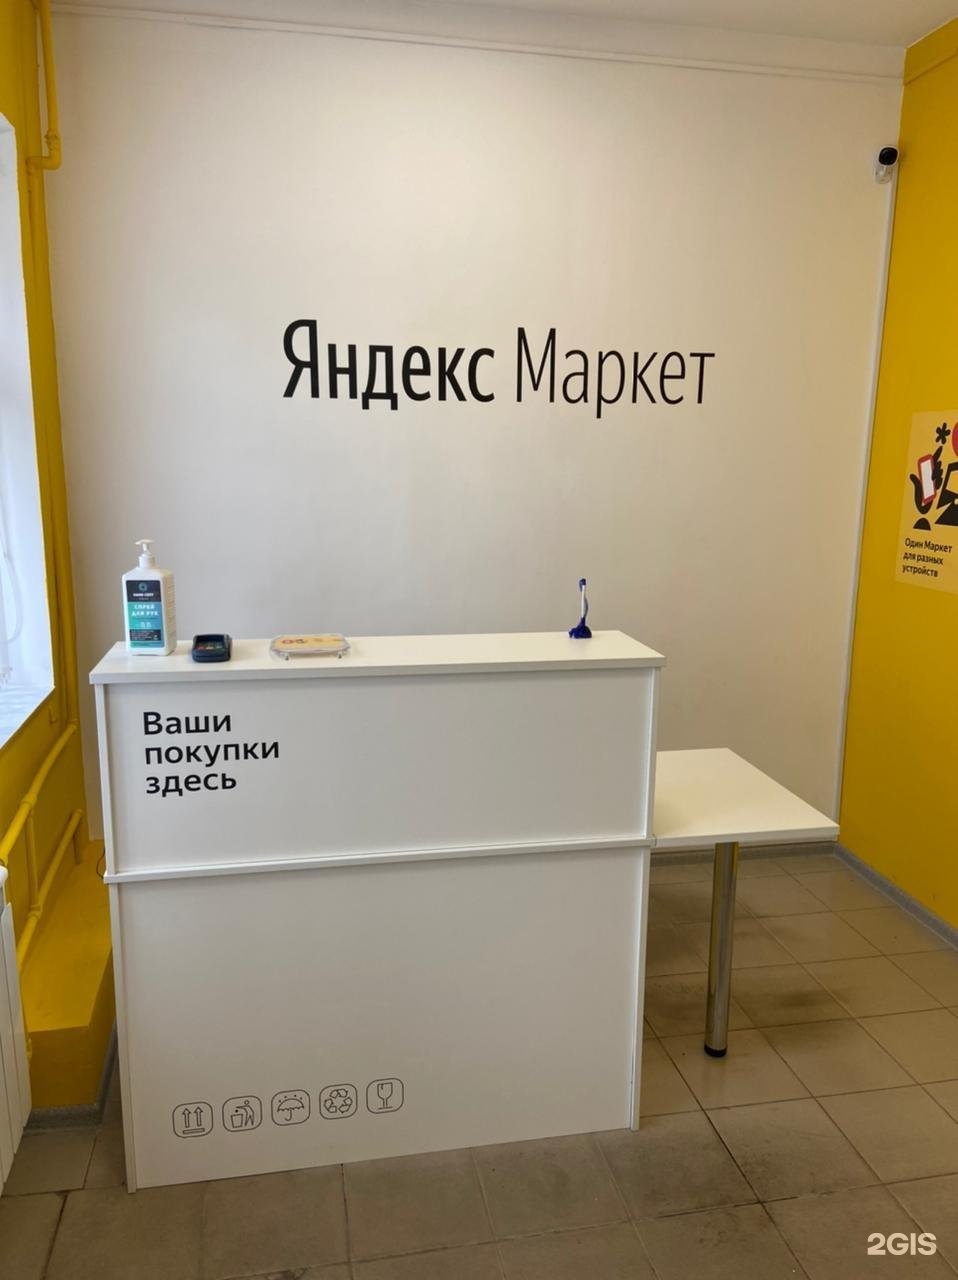 Яндекс Маркет пункт